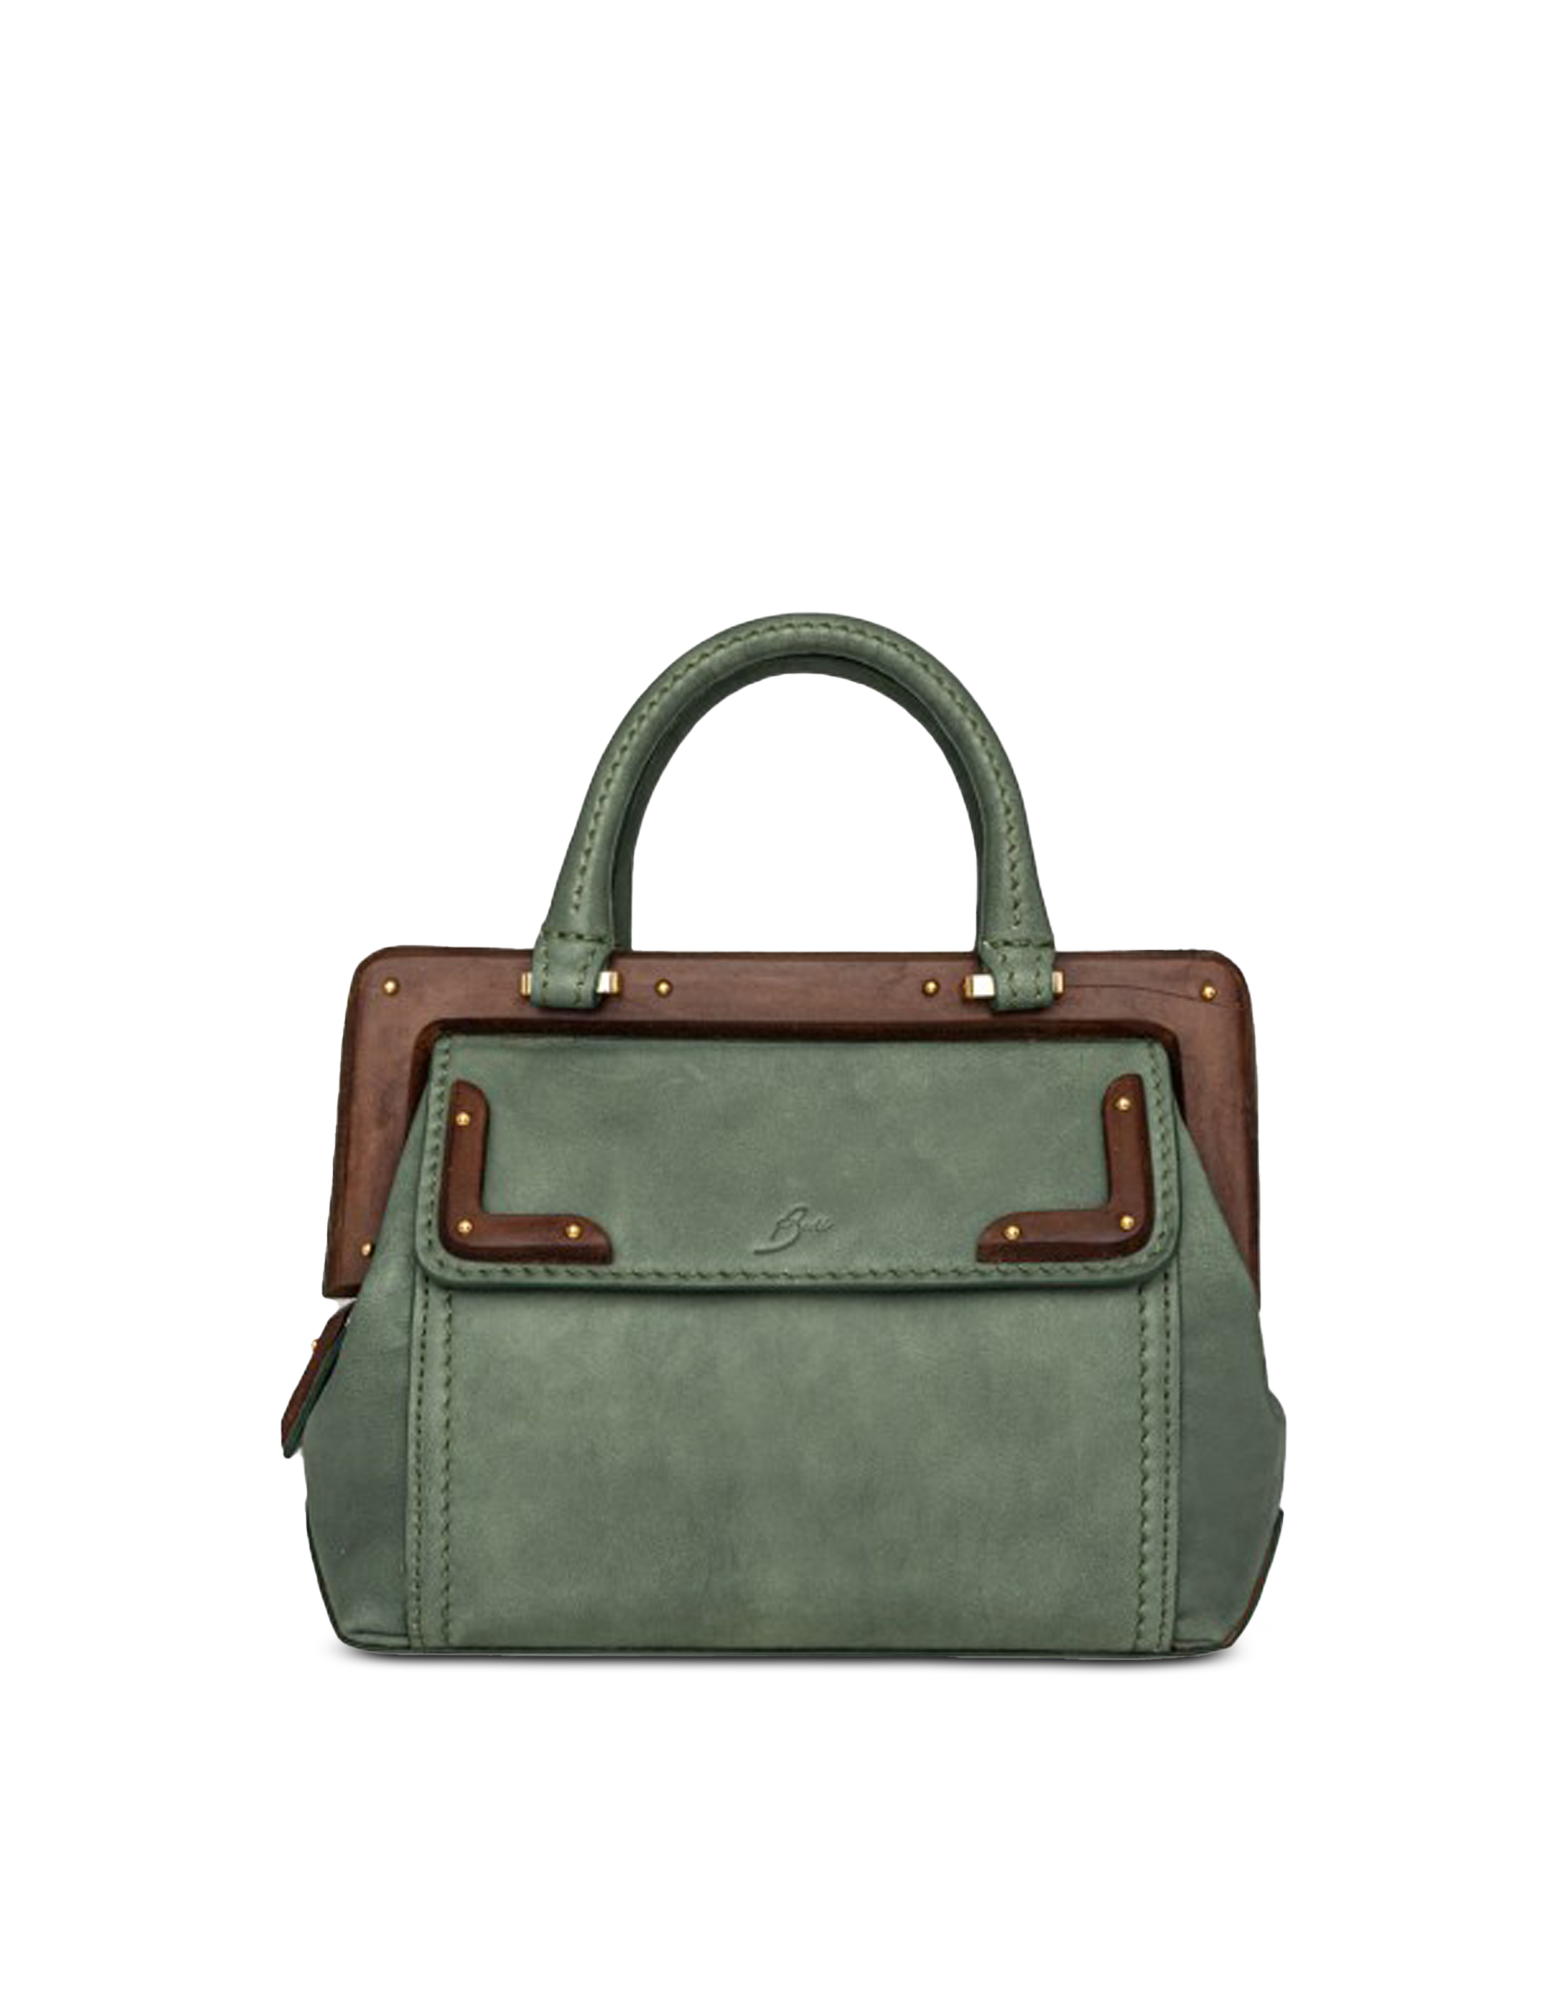 Buti 1630 Sage Leather Small Top Handle Satchel Bag